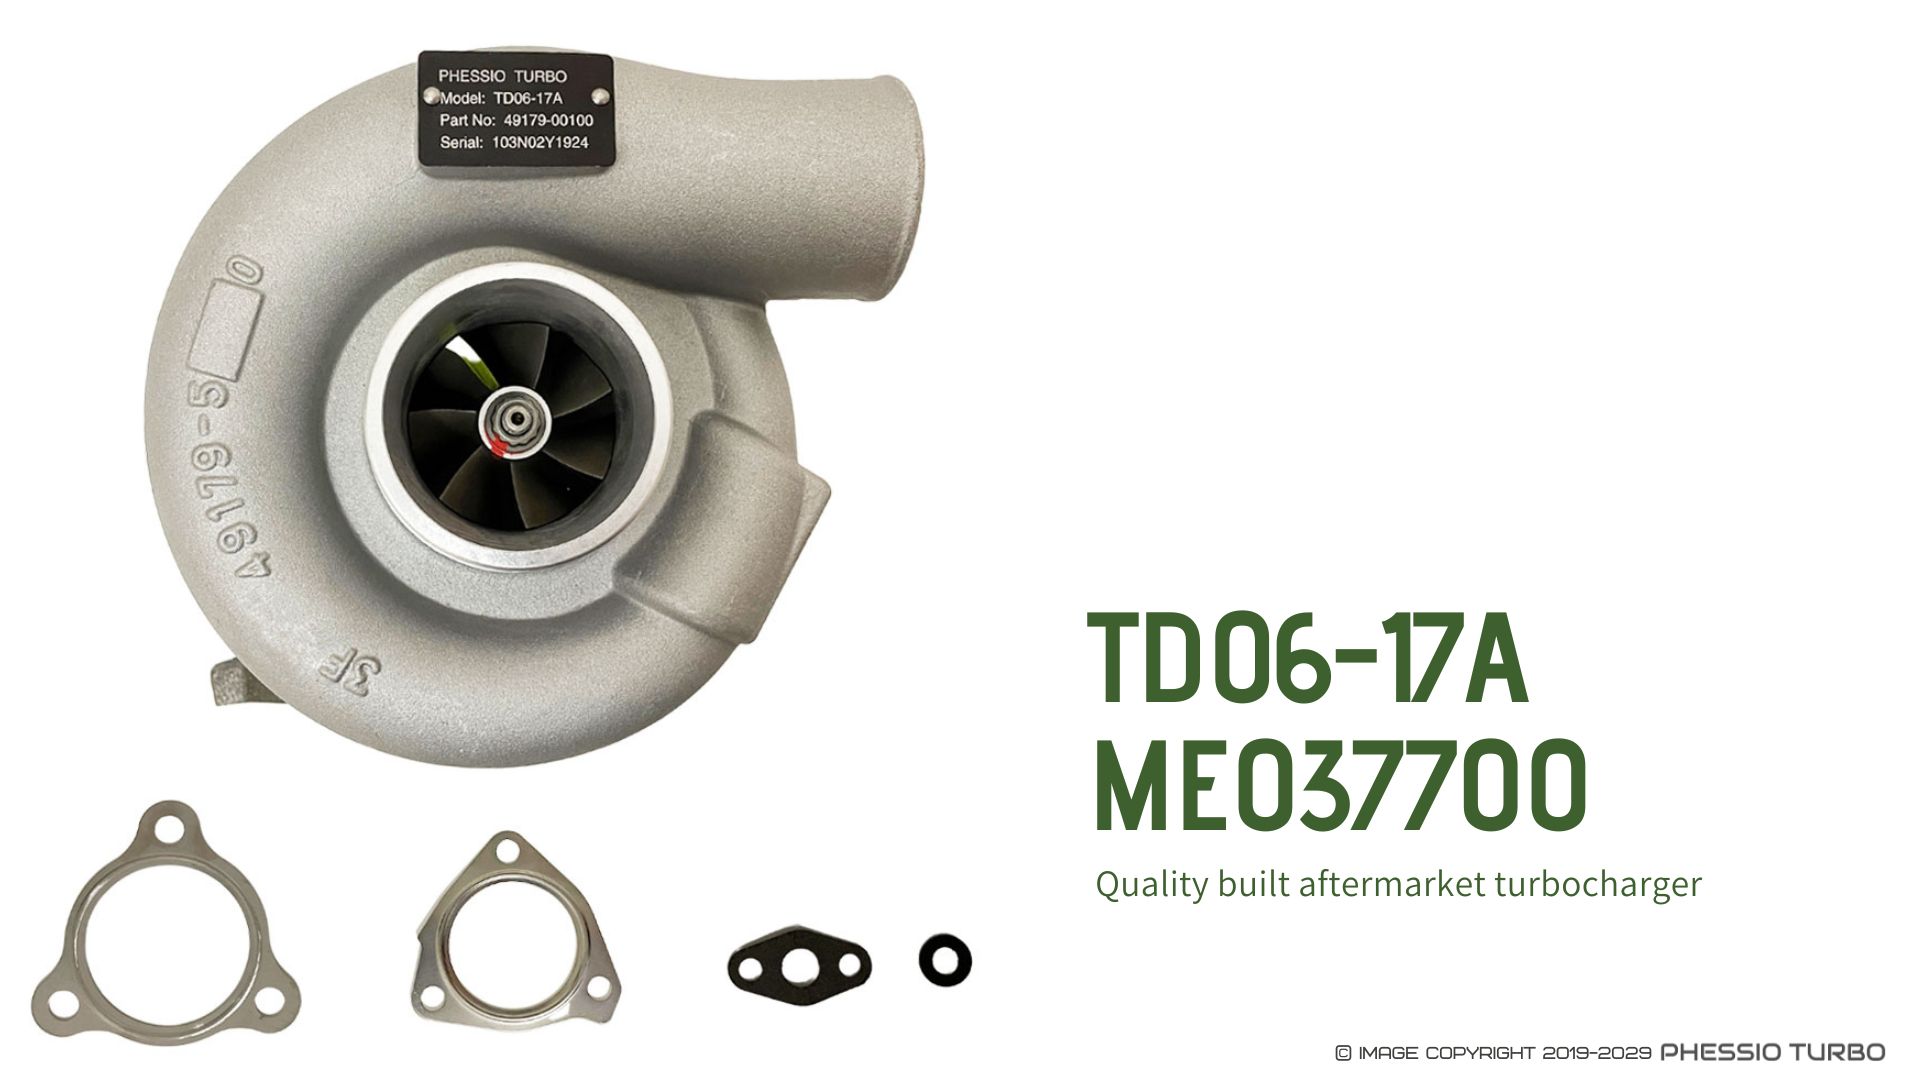 ME037700 Turbo TD06-17A 49179-00100